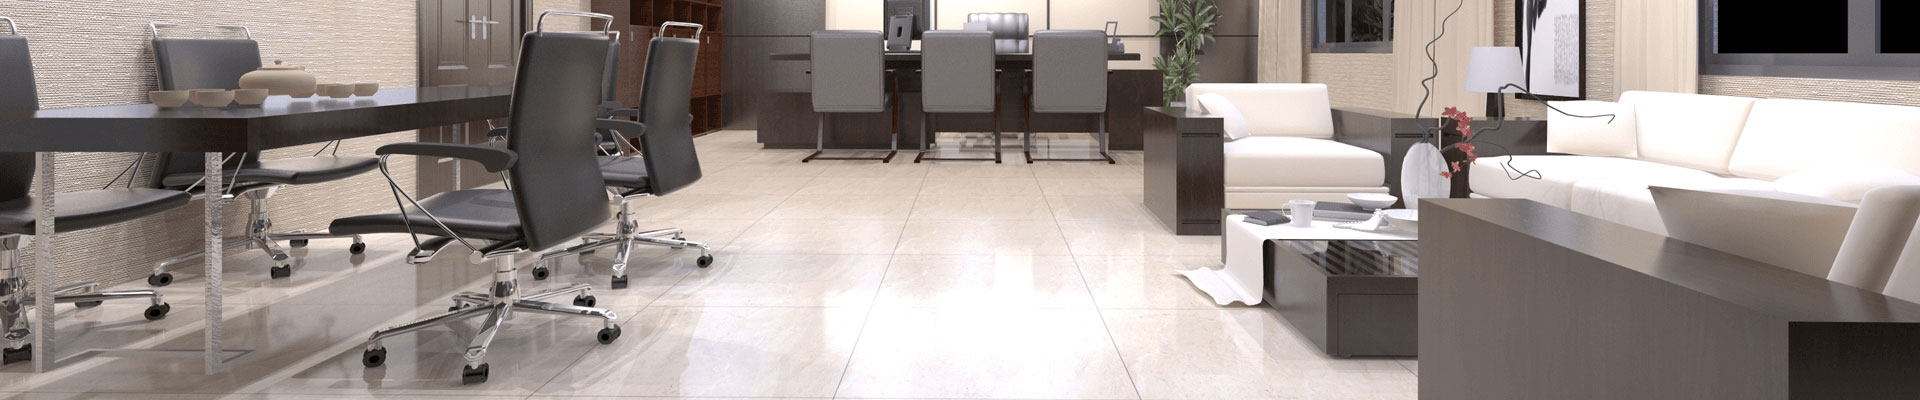 Office Floor Tiles Wholesale Exterior Tiles Manufacturer & Vendor Page 7